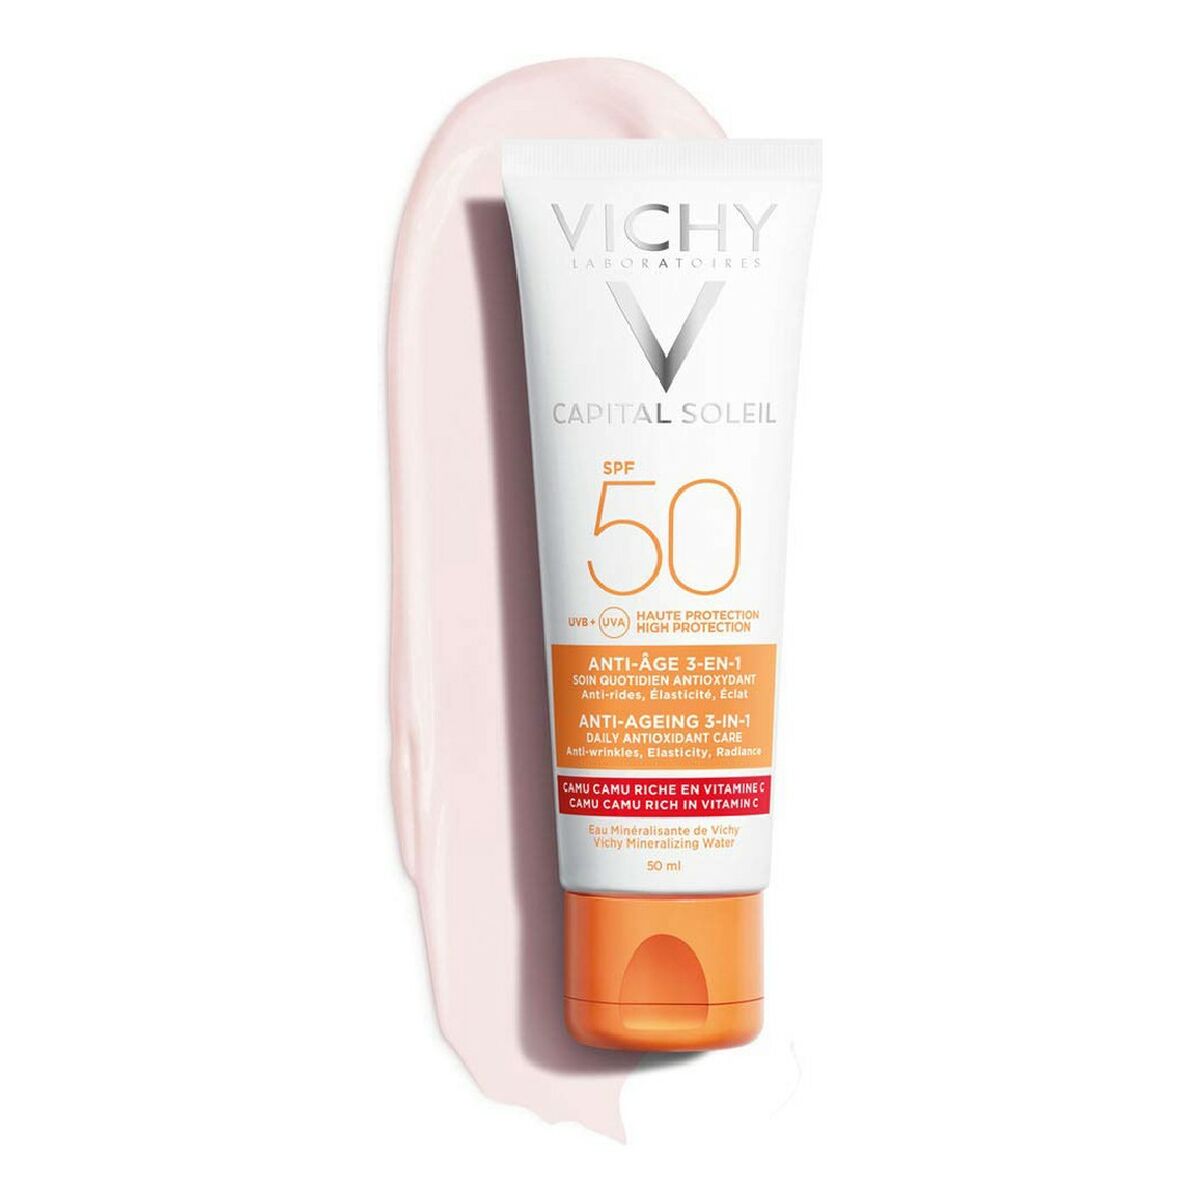 Sonnenschutzcreme für das Gesicht Capital Soleil Vichy VCH00115 Spf 50 50 ml 3 in 1 Anti-Aging